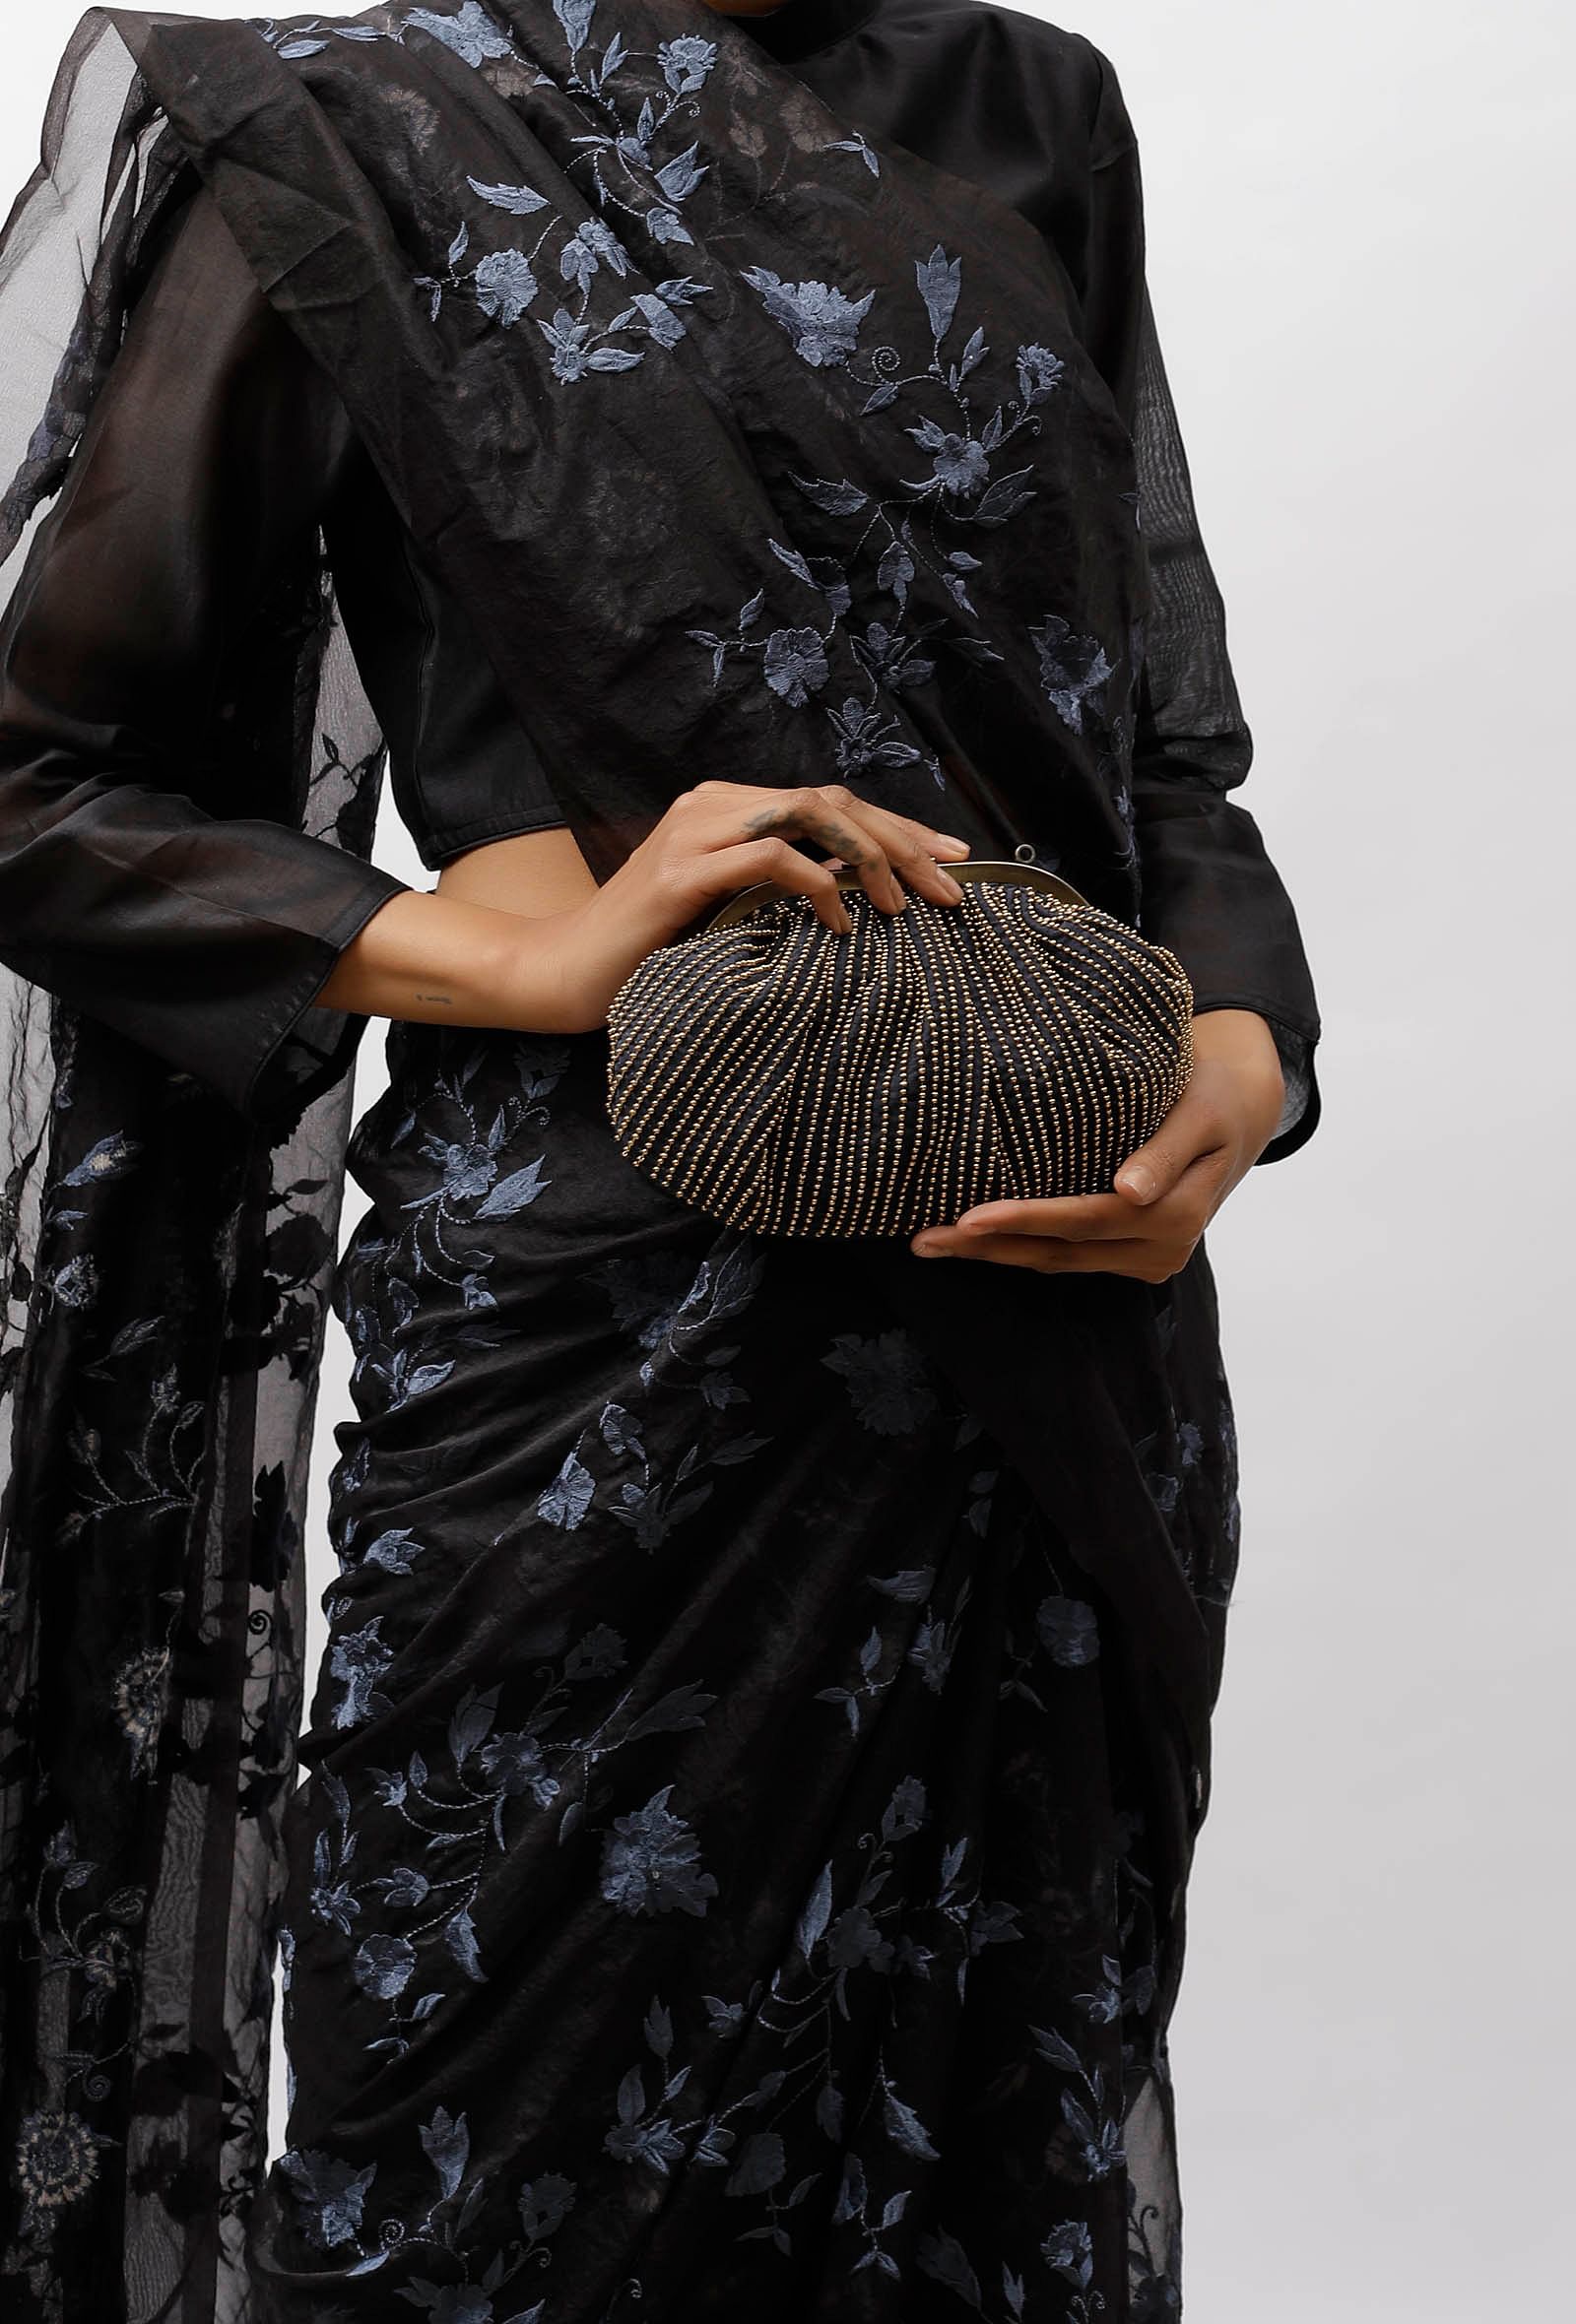 Saira Black Embellished Clutch Bag